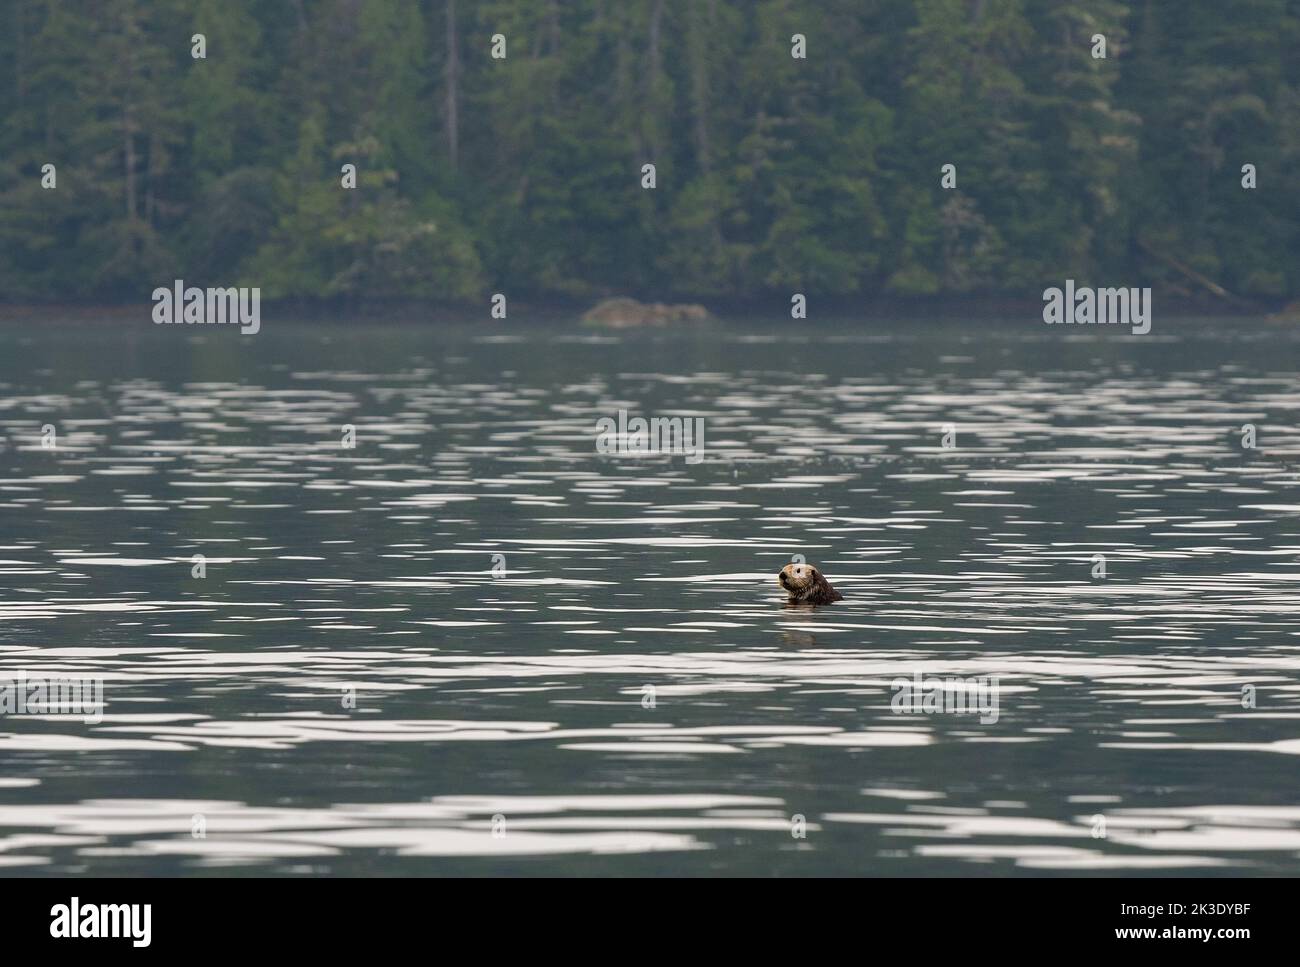 Seeotter (Enhyda lutris) mit Kopf aus dem Wasser, Tofino, Vancouver Island, British Columbia, Kanada. Konzentrieren Sie sich auf Seeotter. Stockfoto